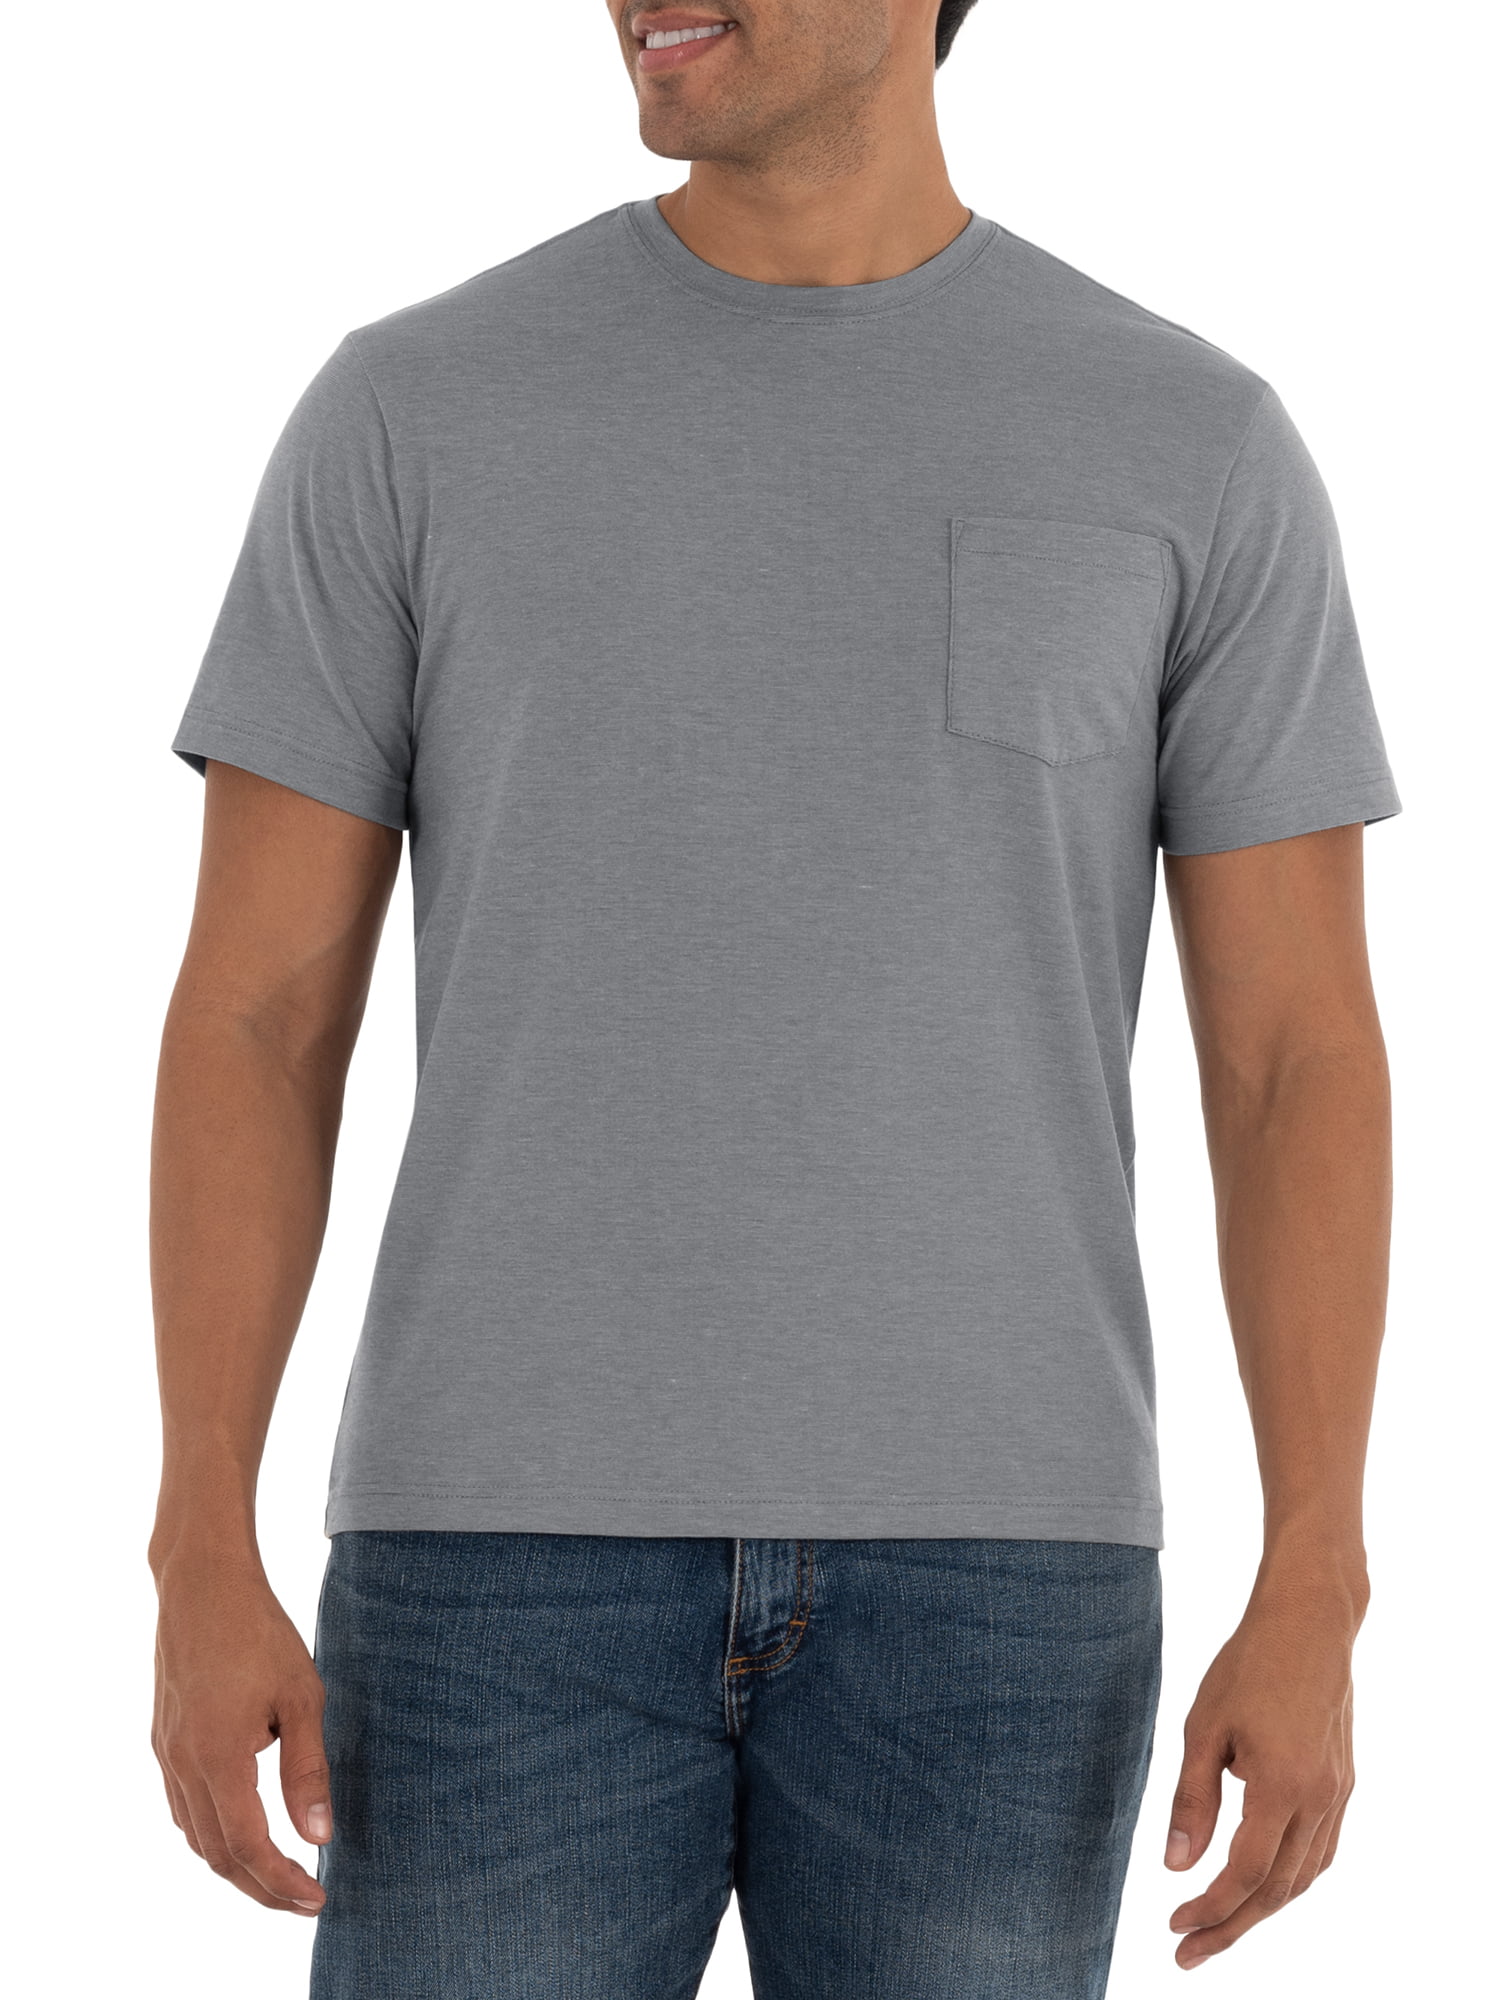 Lee Men's Premium T-Shirt, 2 Pack